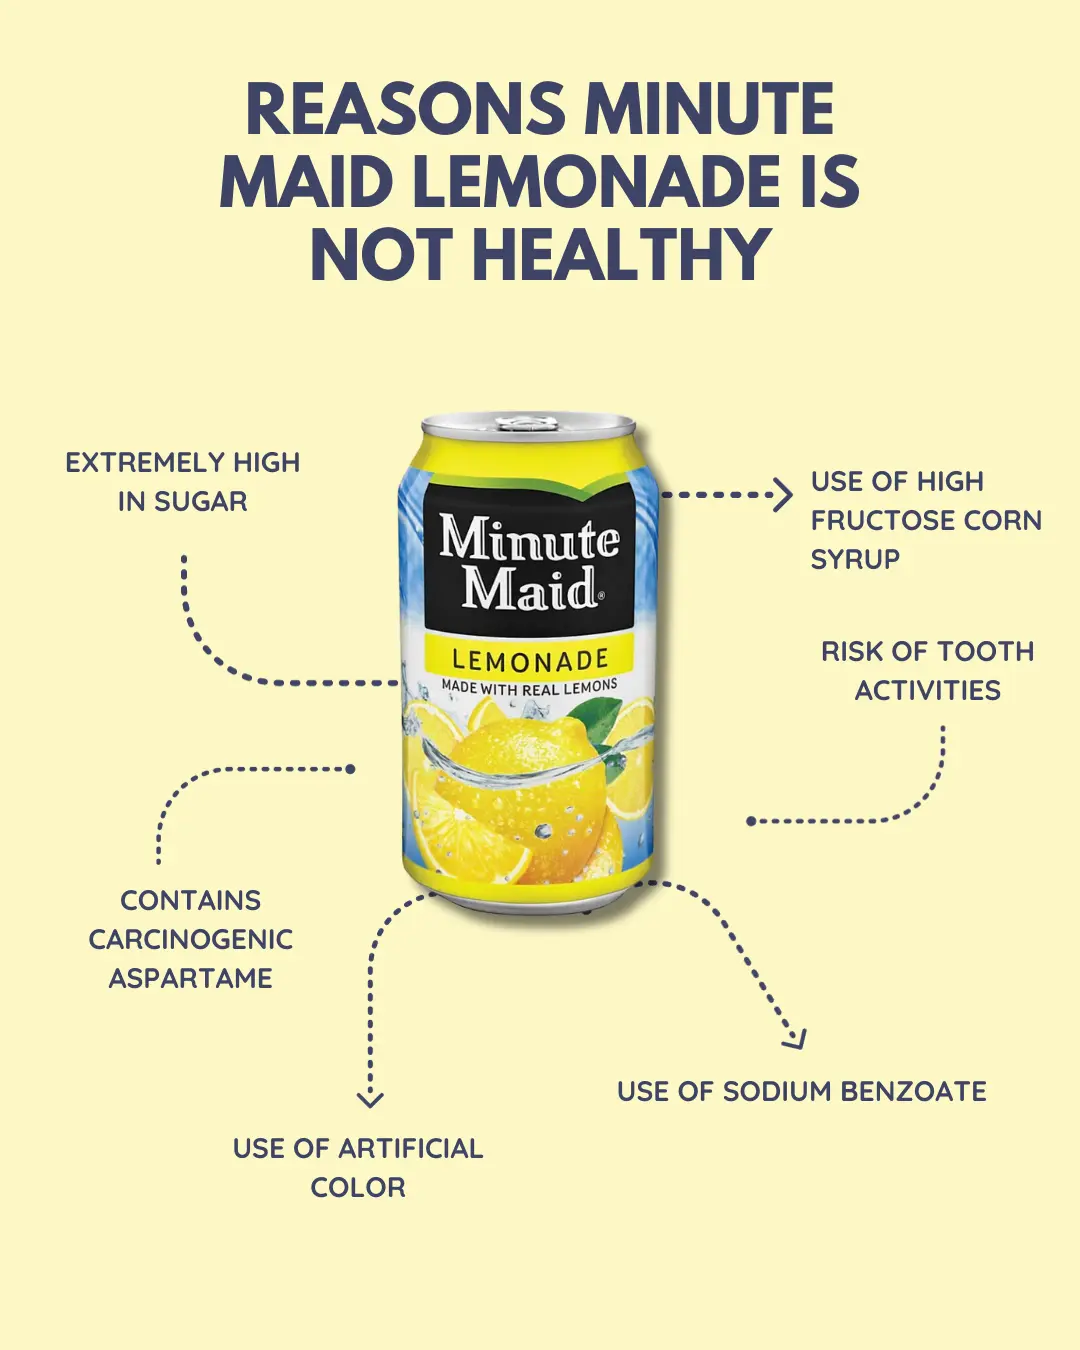 Minute maid lemonade is not healthy